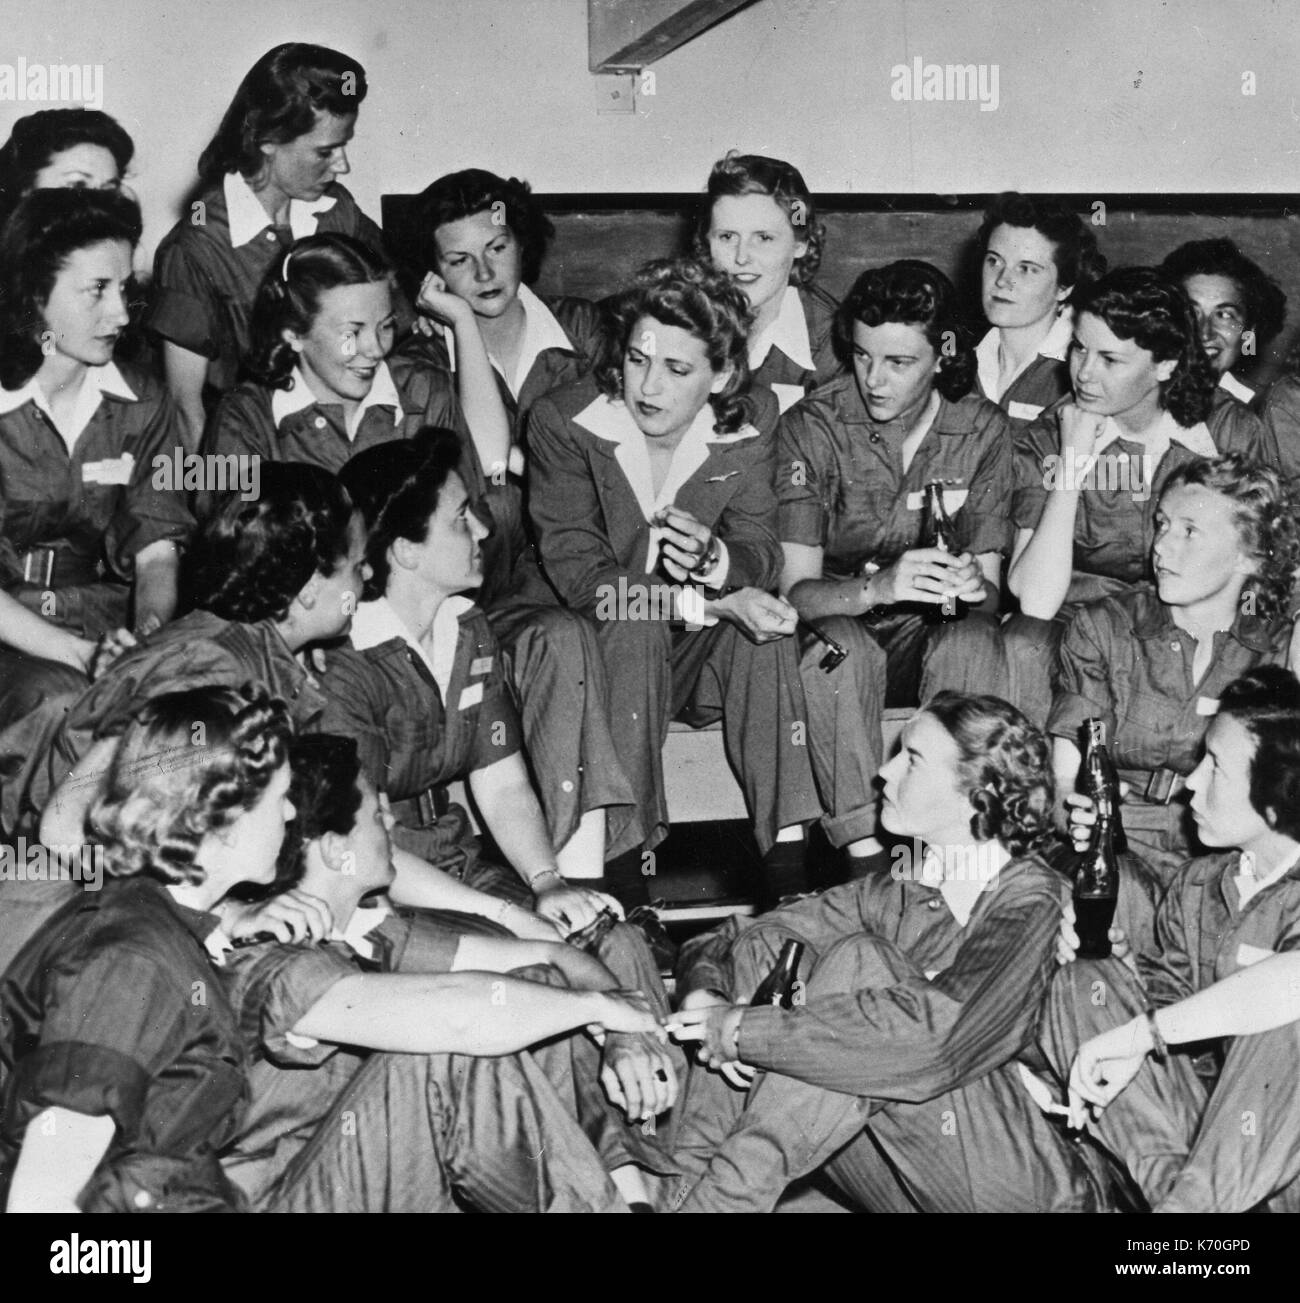 Jacqueline Cochran, Mitte, Direktor der Frauen Pilot Training AAF Flying Training Center in Fort Worth, Texas, spricht informell an eine Gruppe von Auszubildenden. Avenger Feld, Sweetwater, Texas, 1943. Stockfoto